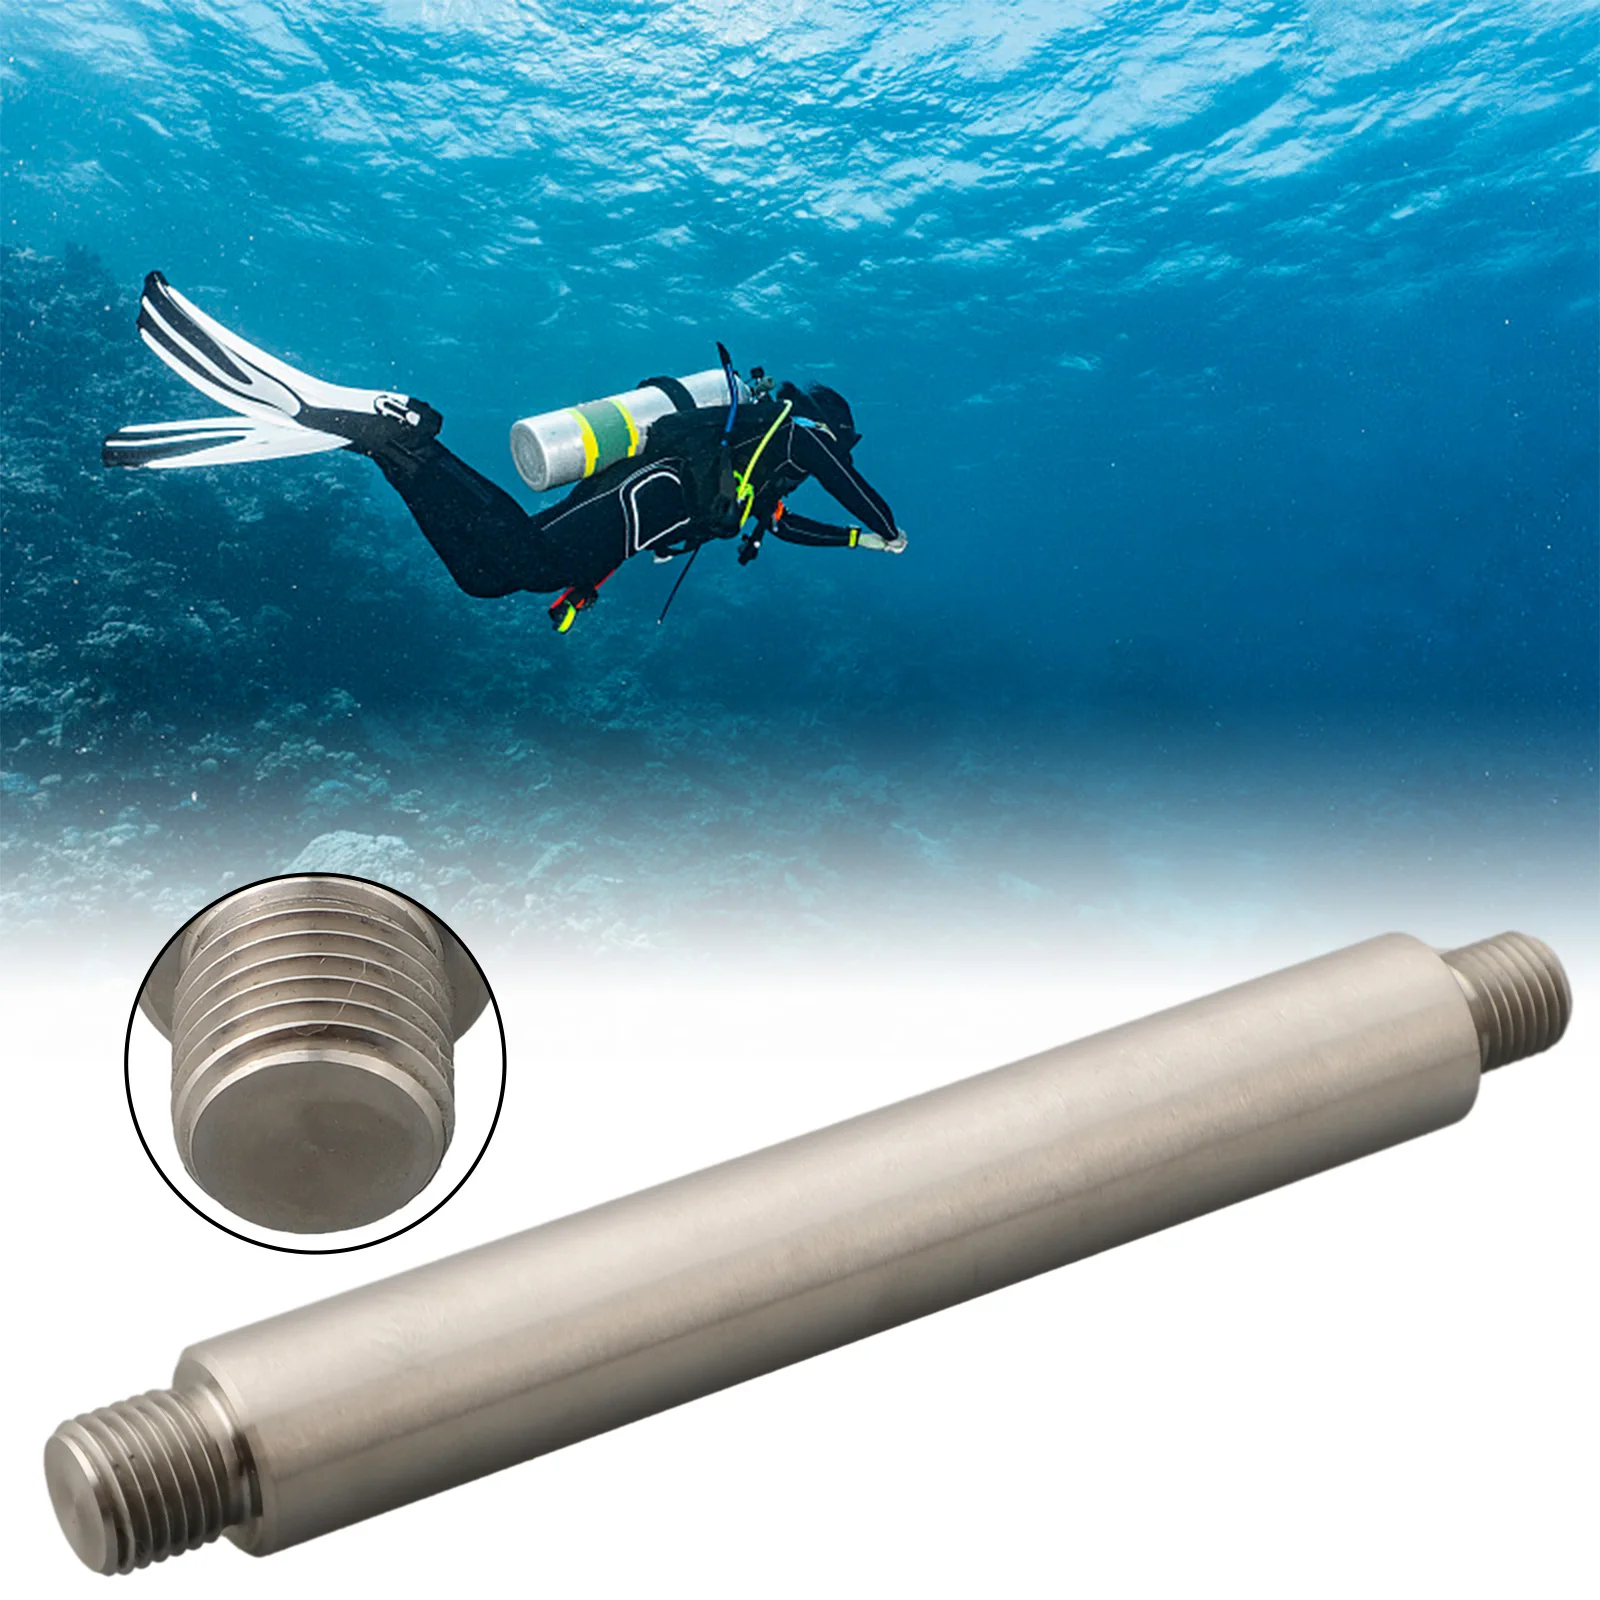 

Планка для дайвинга, ручка для подводного плавания, ручка BCD для дайвинга для первого этапа, легкая, прочная, для дайвинга